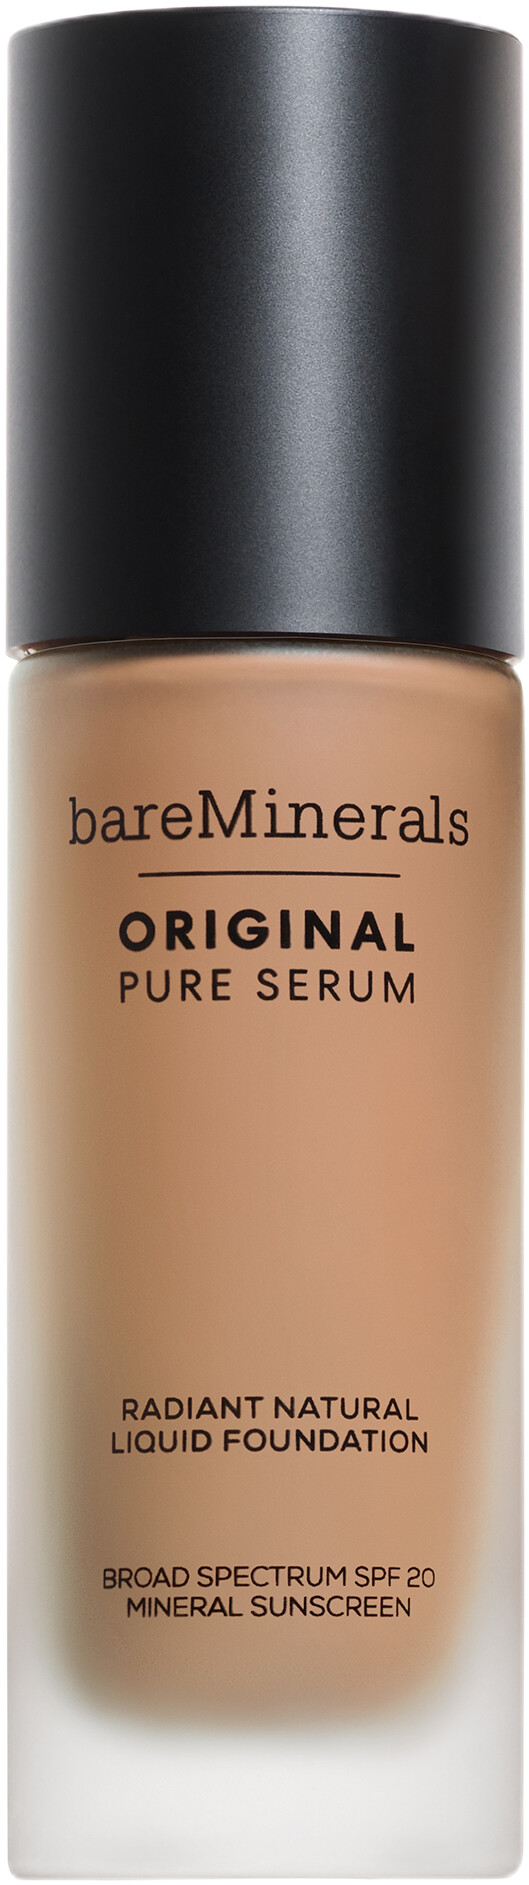 bareMinerals Original Pure Serum Radiant Natural Liquid Foundation SPF20 30ml 3.5 - Medium Cool